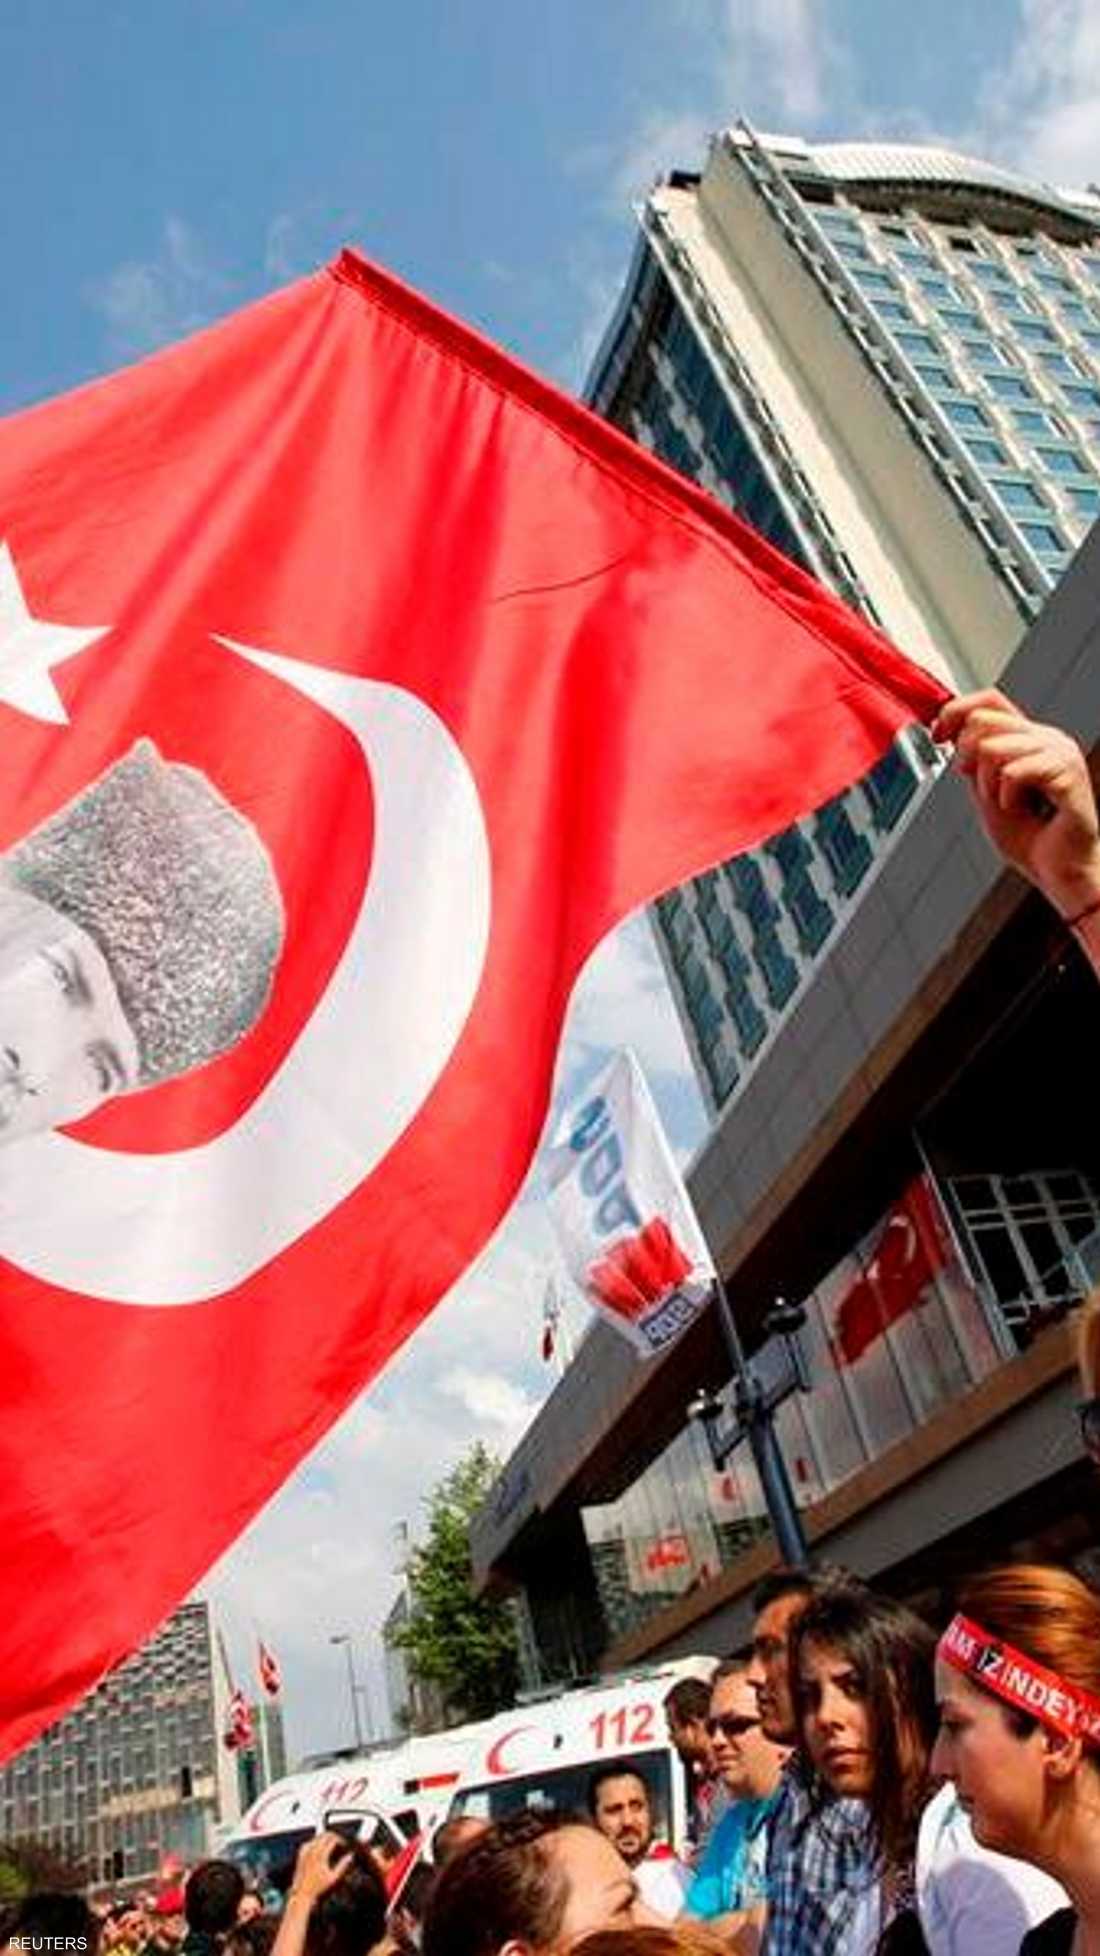 المتظاهرون برفعهم صور أبو الأتراك (أتاتورك) يعبرون عن تمسكهم بالعلمانية التي أرساها الأخير بعد انهيار السلطنة العثمانية.